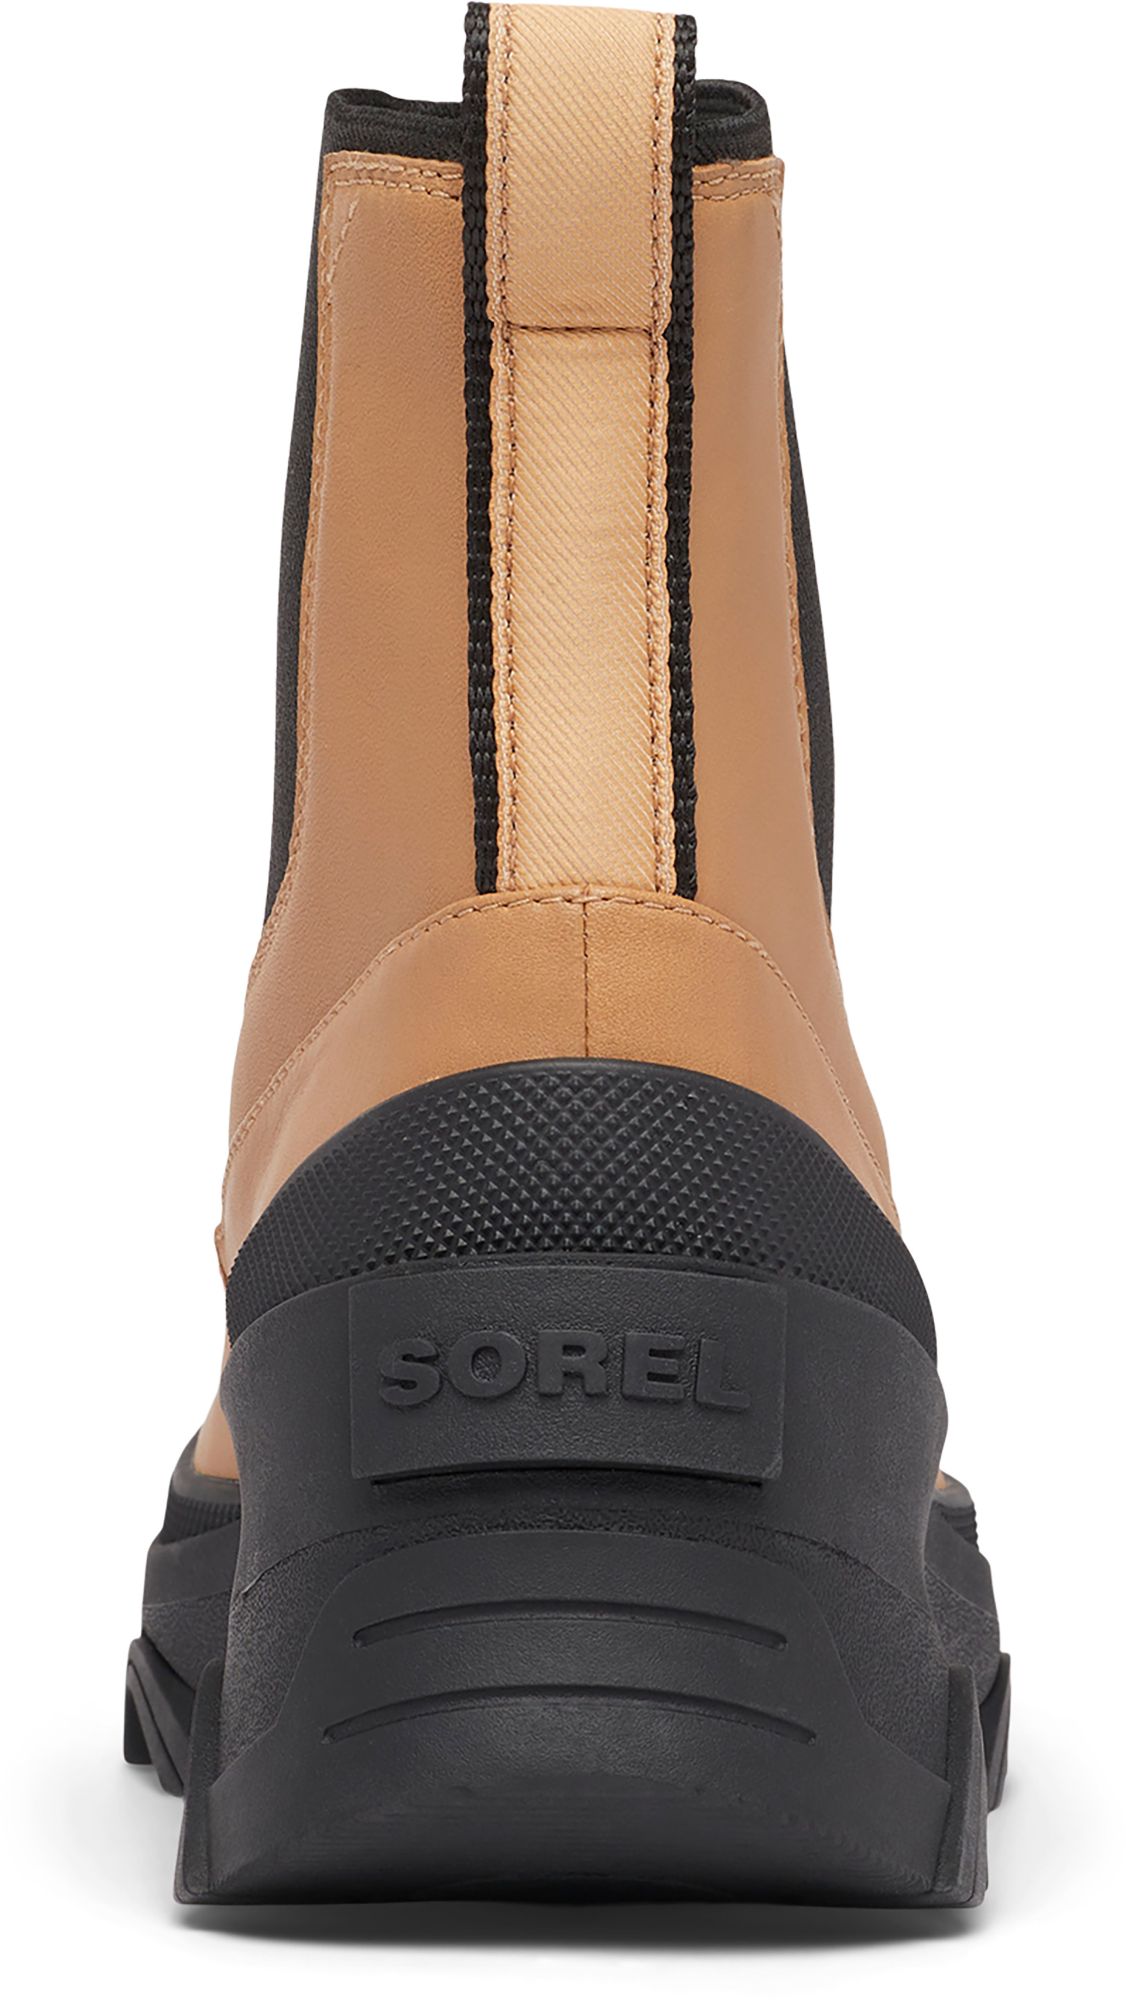 SOREL Women's Brex Waterproof Chelsea Boots